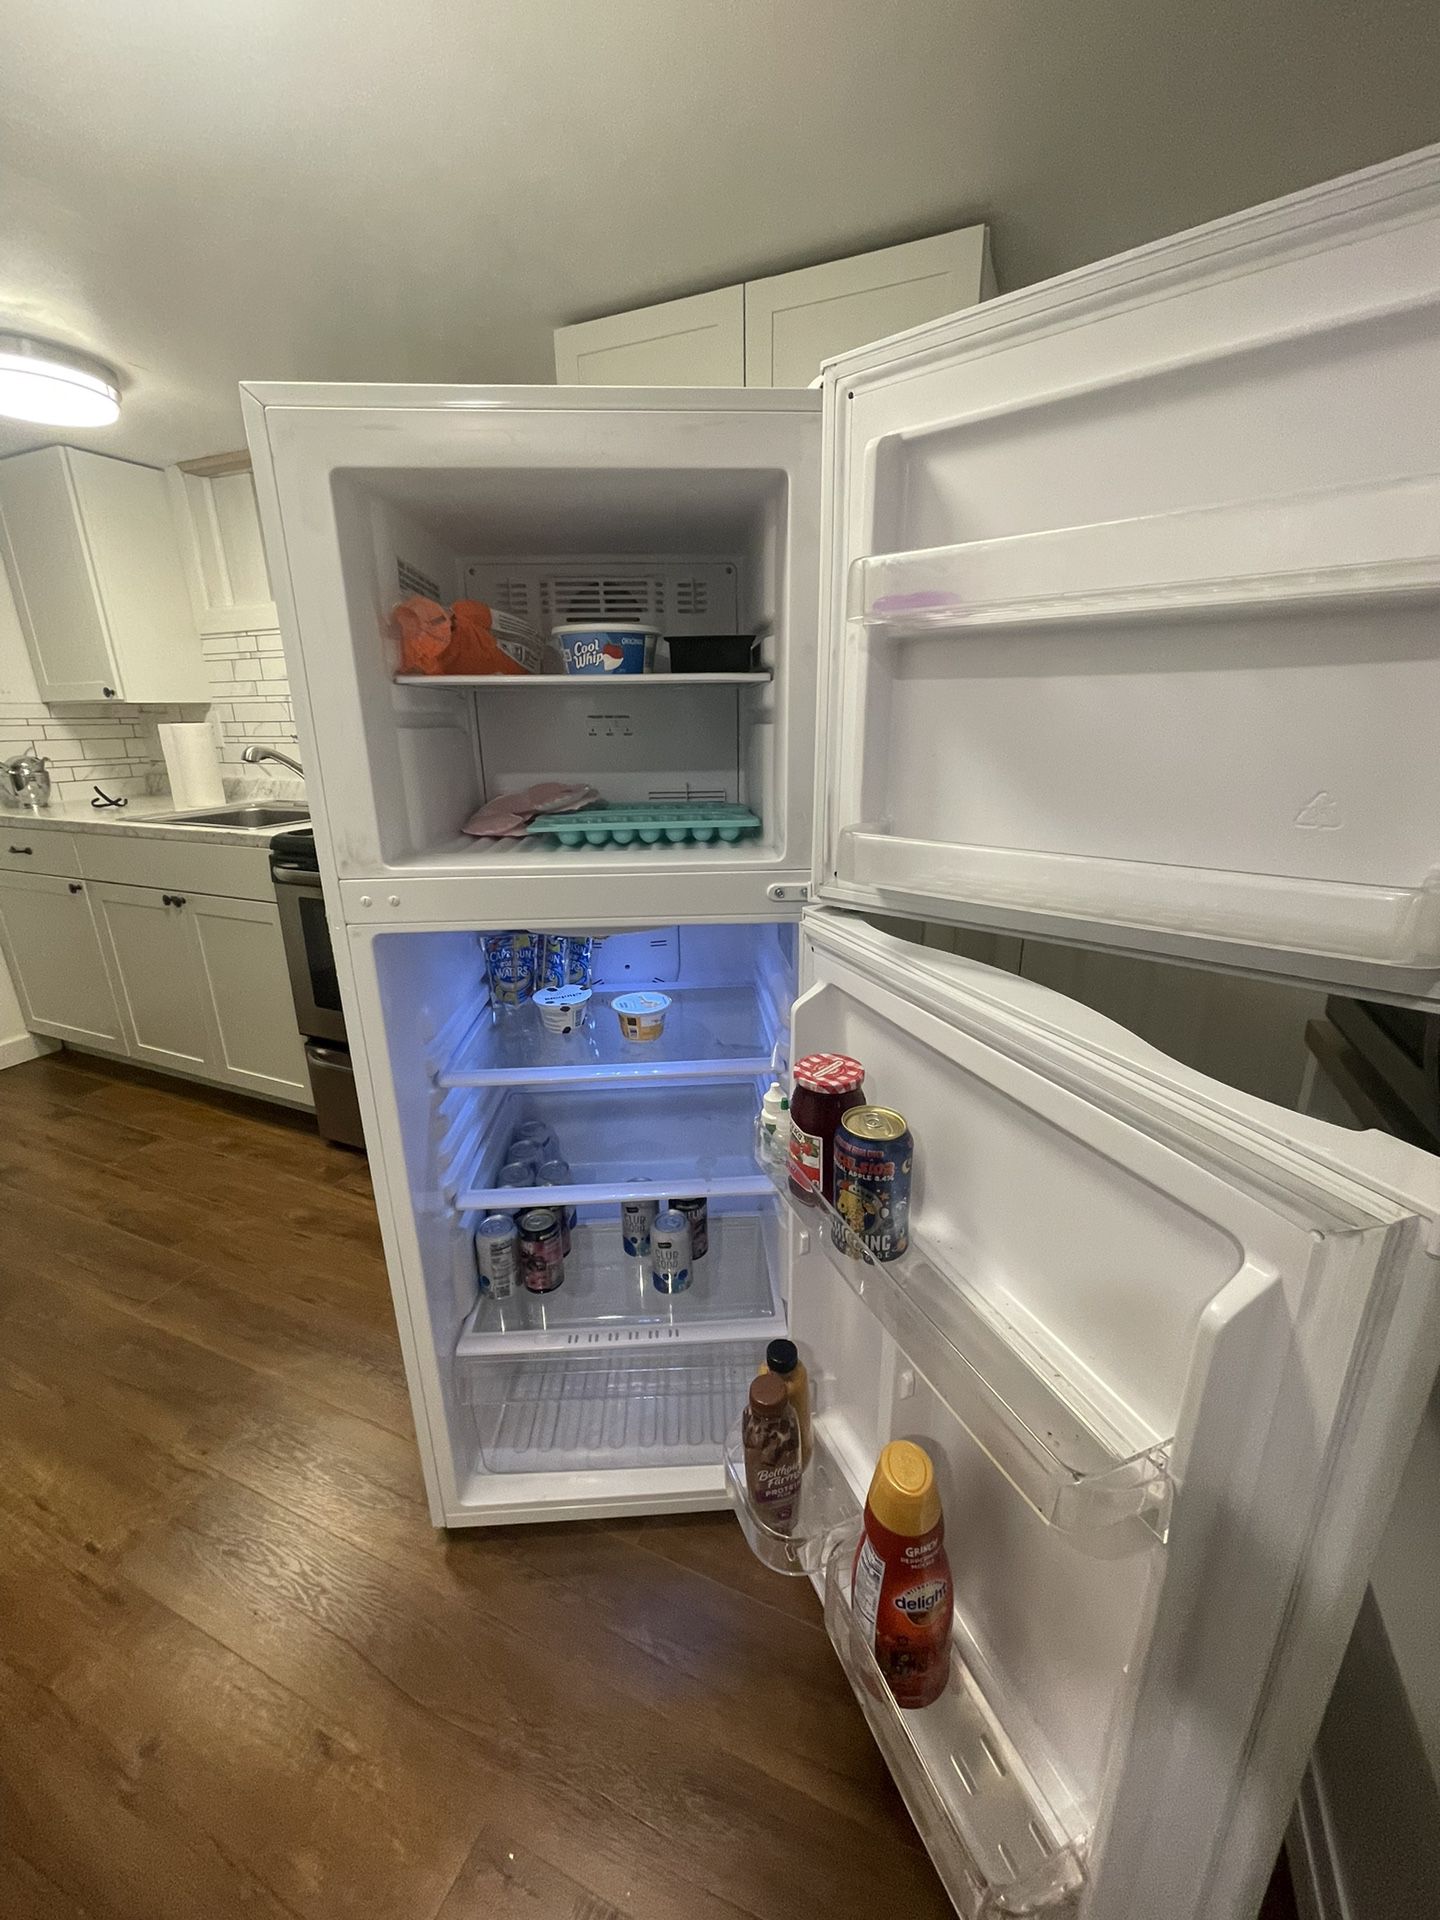 Haier  9.8 cu. ft. Top Freezer Refrigerator White